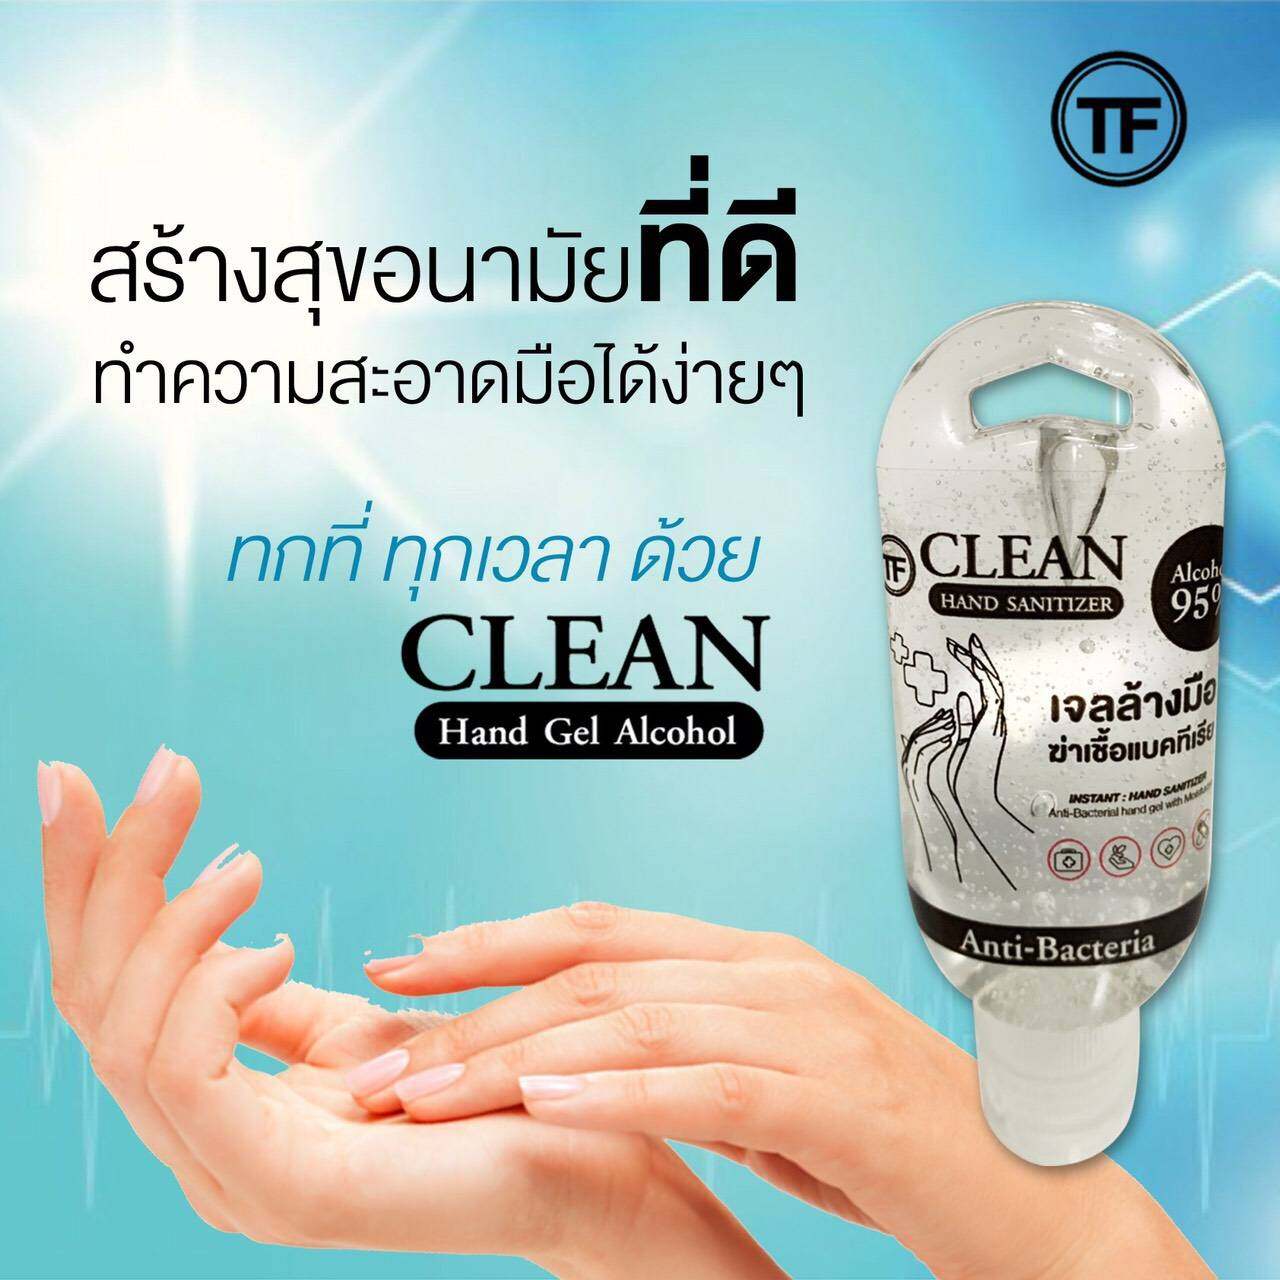 ( ส่งฟรี !! เมื่อซื้อ3หลอด ) TF CLEAN hand gel alcohol 50 ml. ทีเอฟ แฮนด์ เจล แอลกอฮอล์ 50 มล. เจลล้างมือ